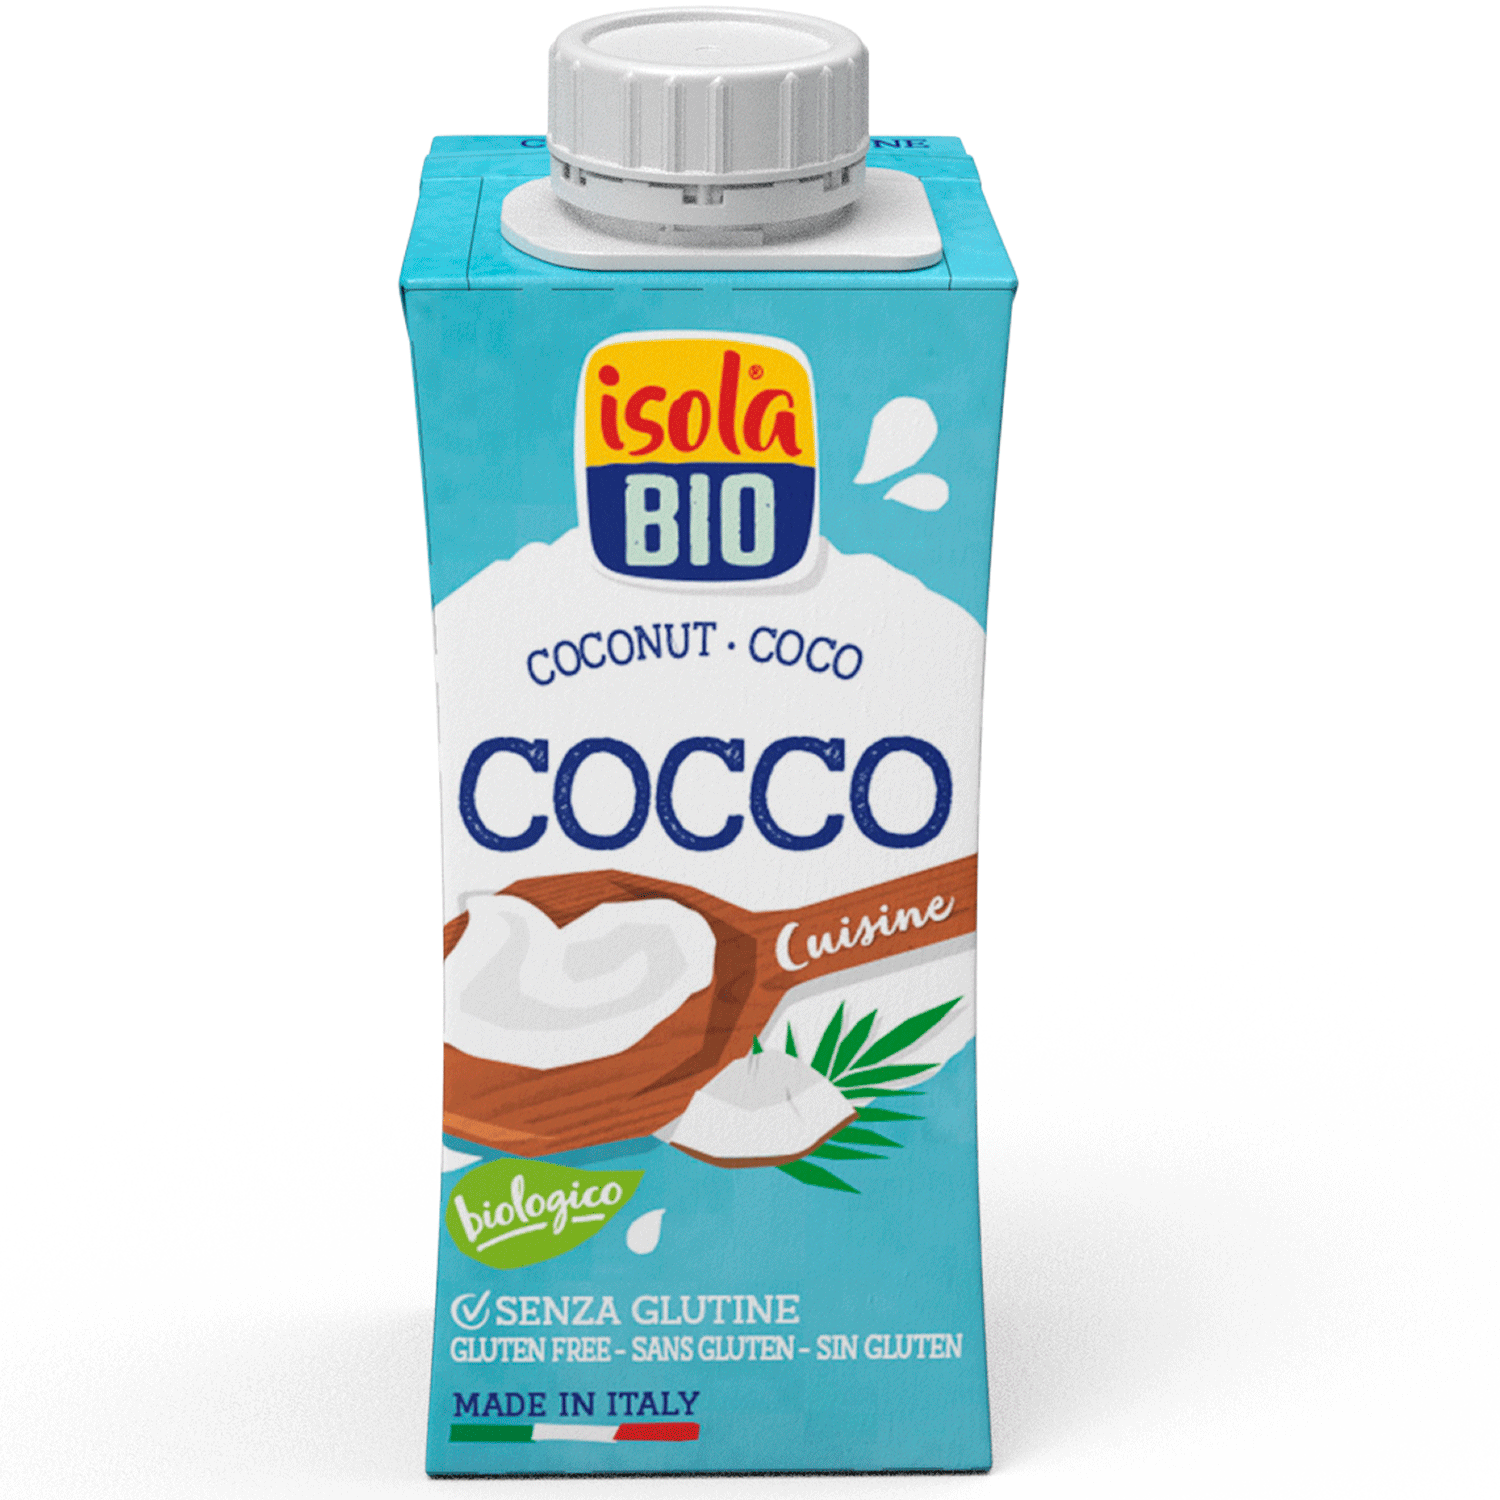 Crema de coco Orgánica 200 ml, Isola Bio